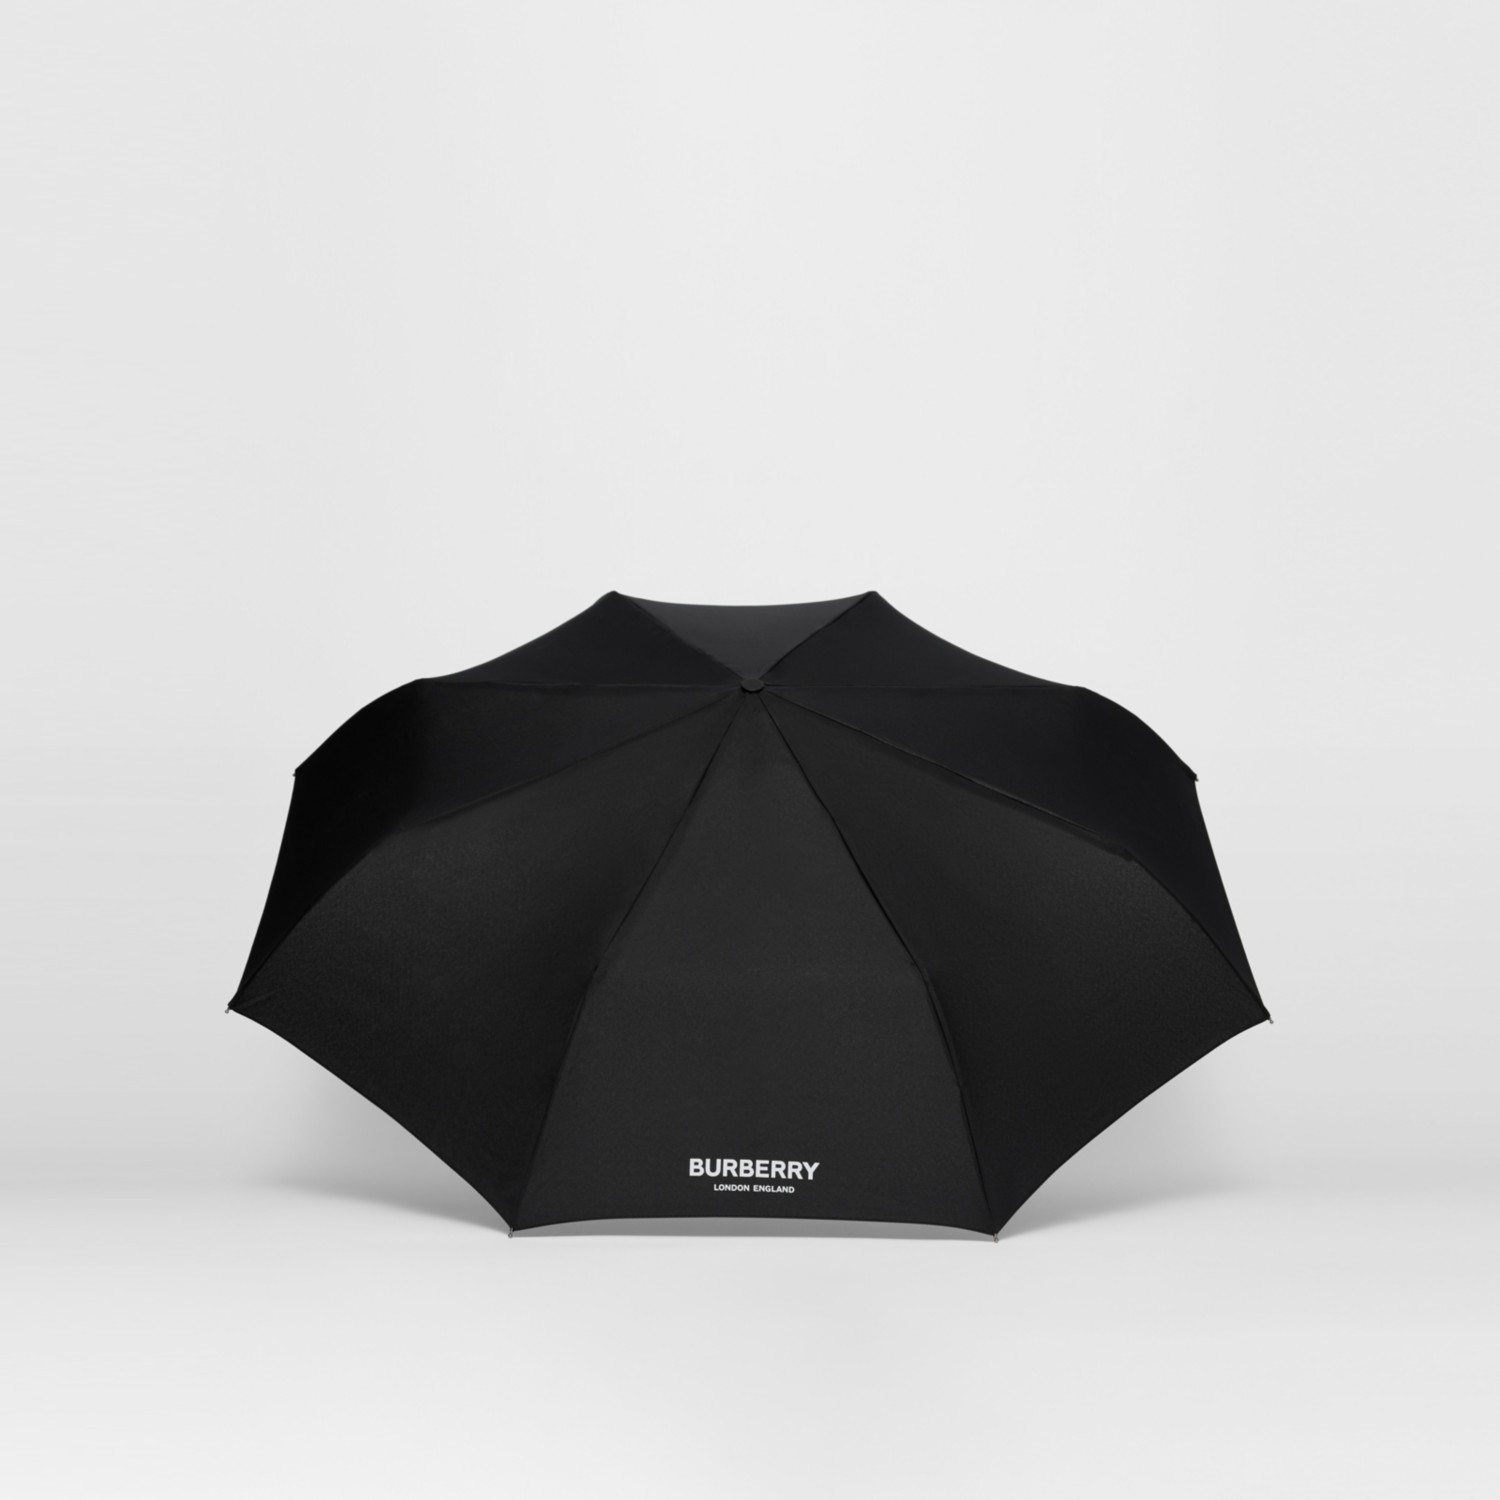 メンズ向け折りたたみ傘選 ギフトにおすすめの傘ブランドもご紹介 Mangifts By Memoco